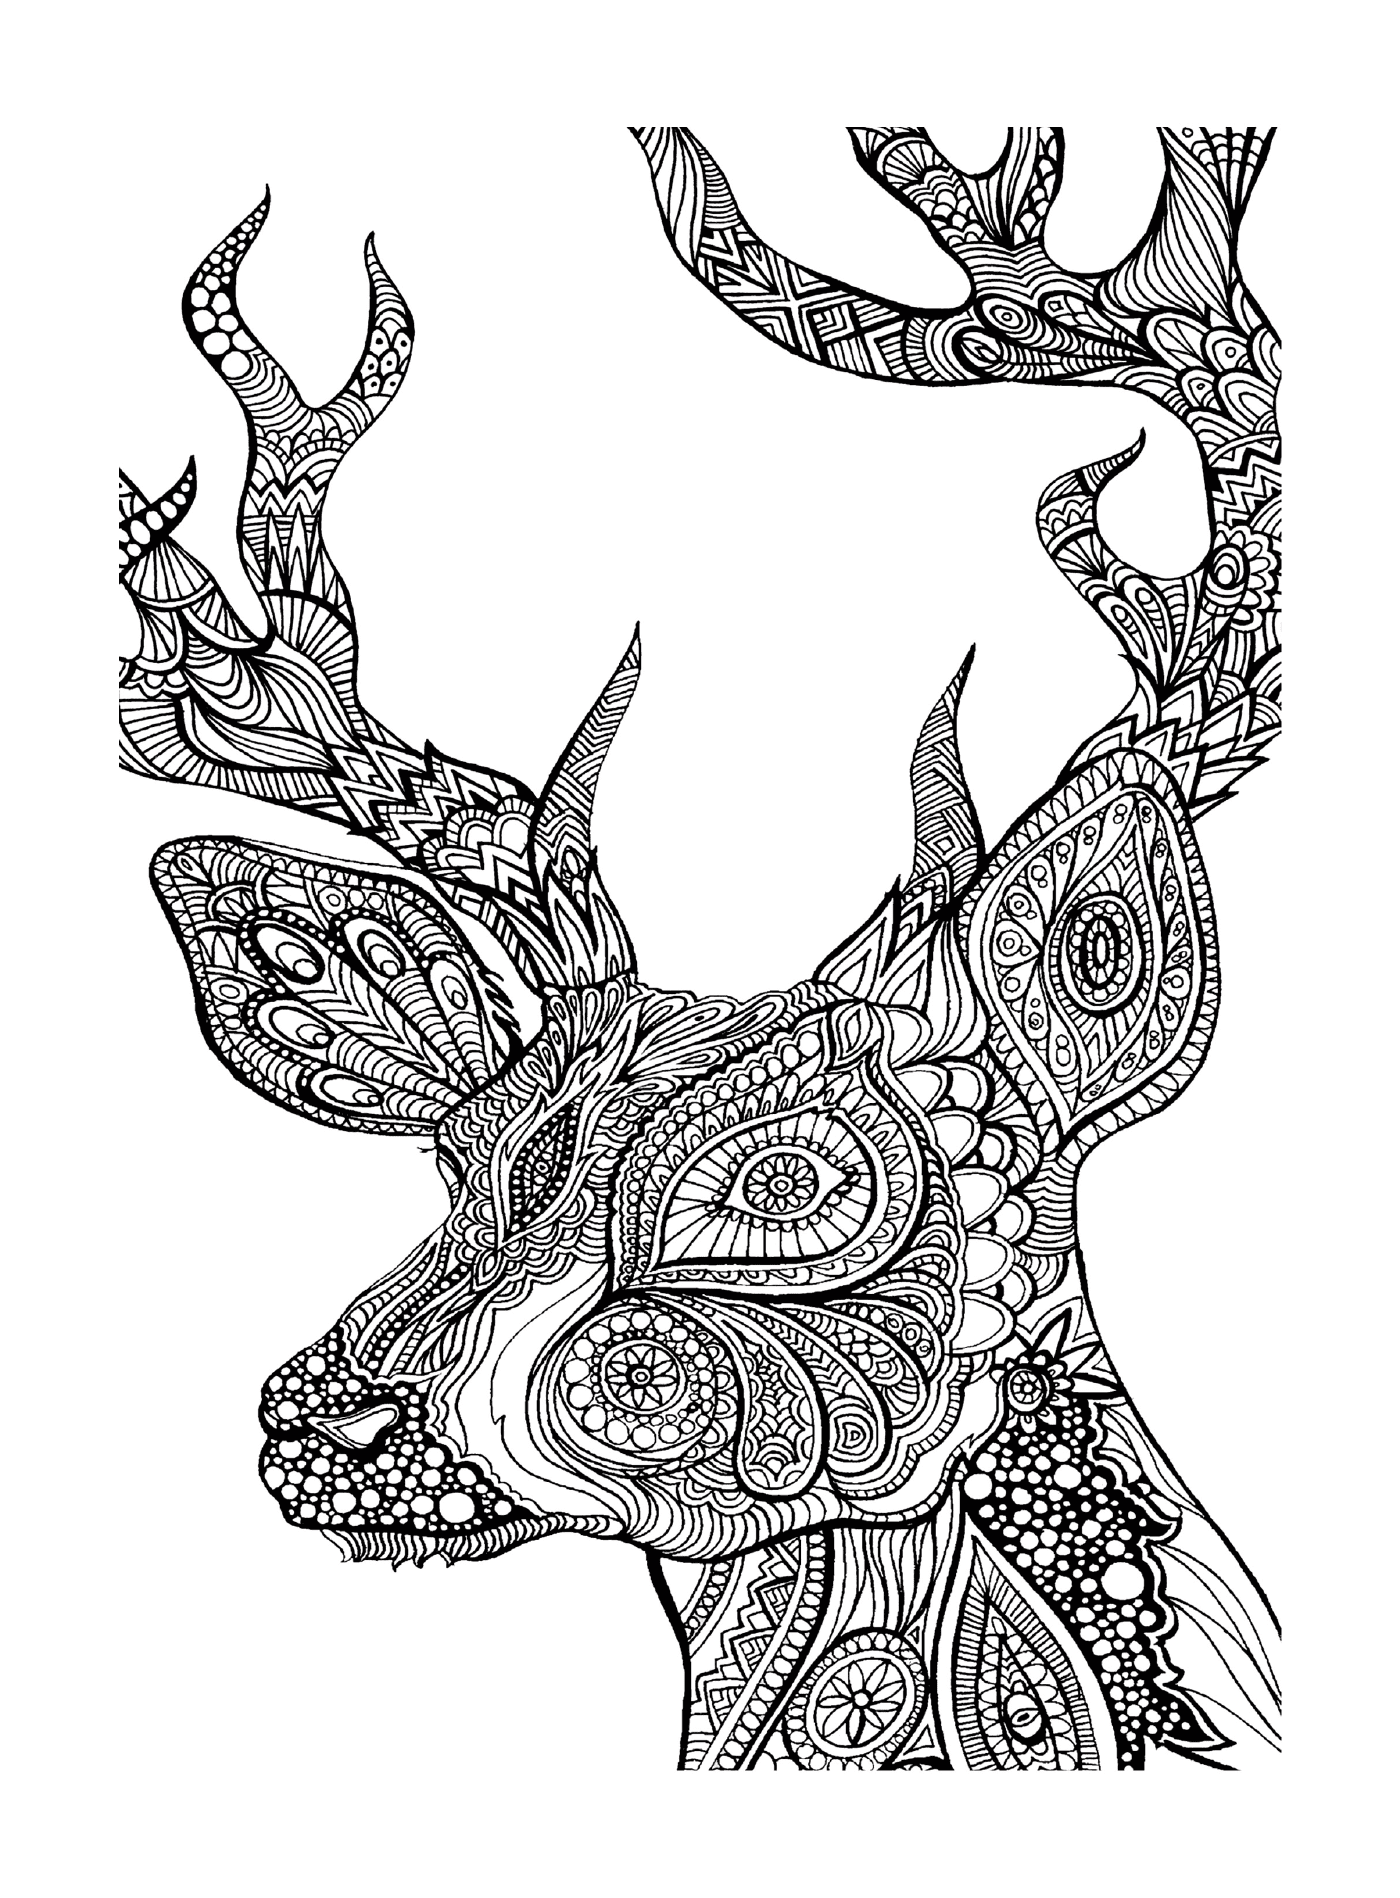  A cabeça de um cervo 